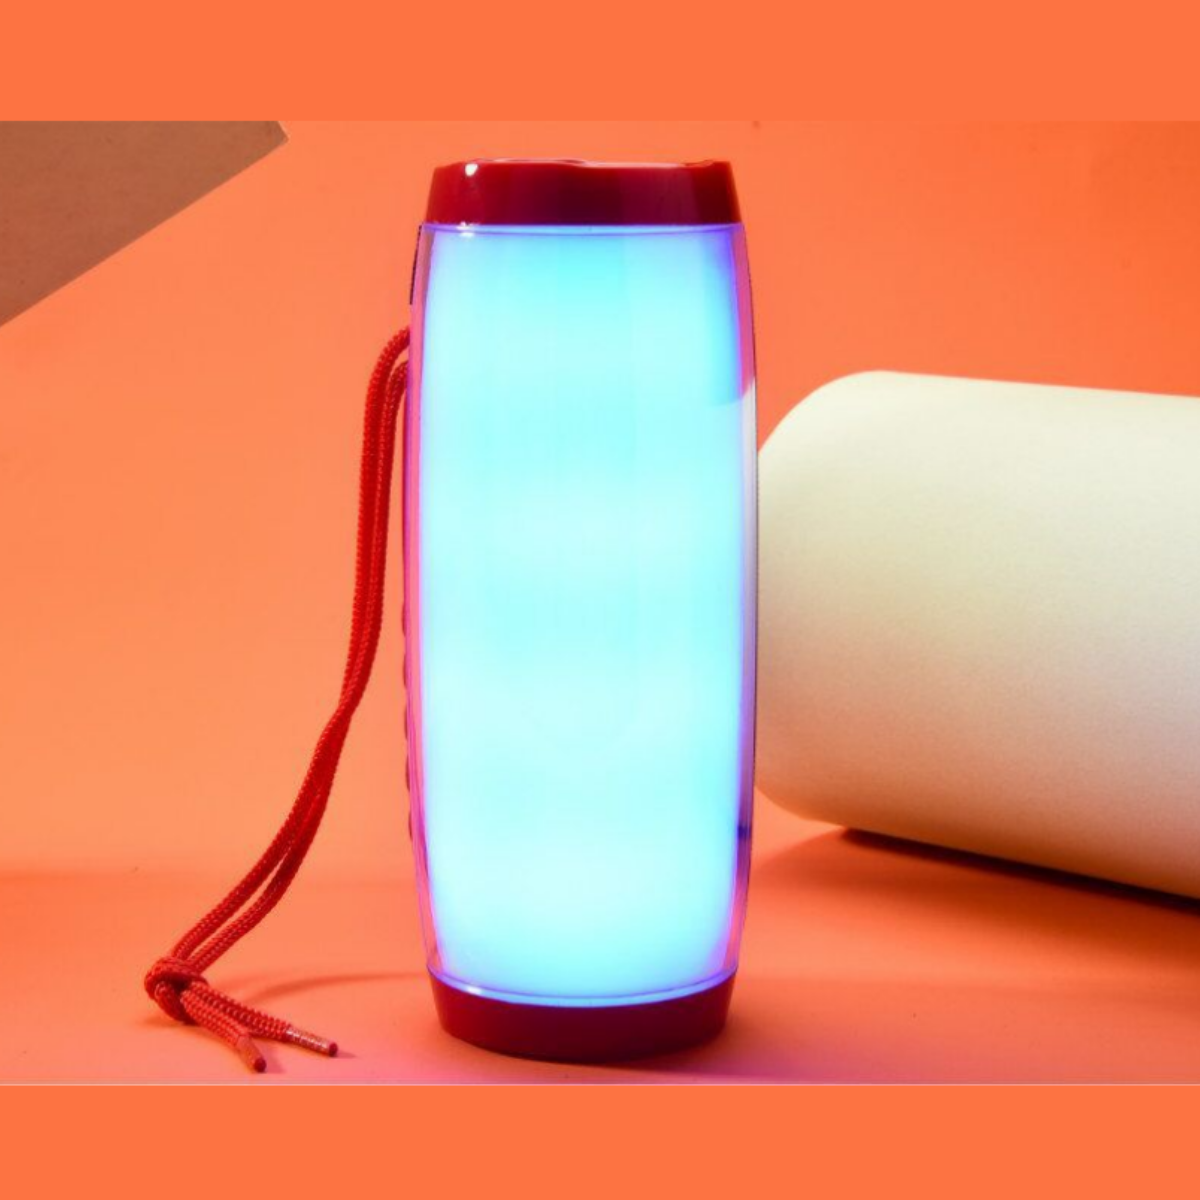 Wasserdicht Subwoofer LED Resonanzkörper, Bluetooth-Lautsprecher Drahtloser Dazzle Outdoor SYNTEK Farblichter Grau